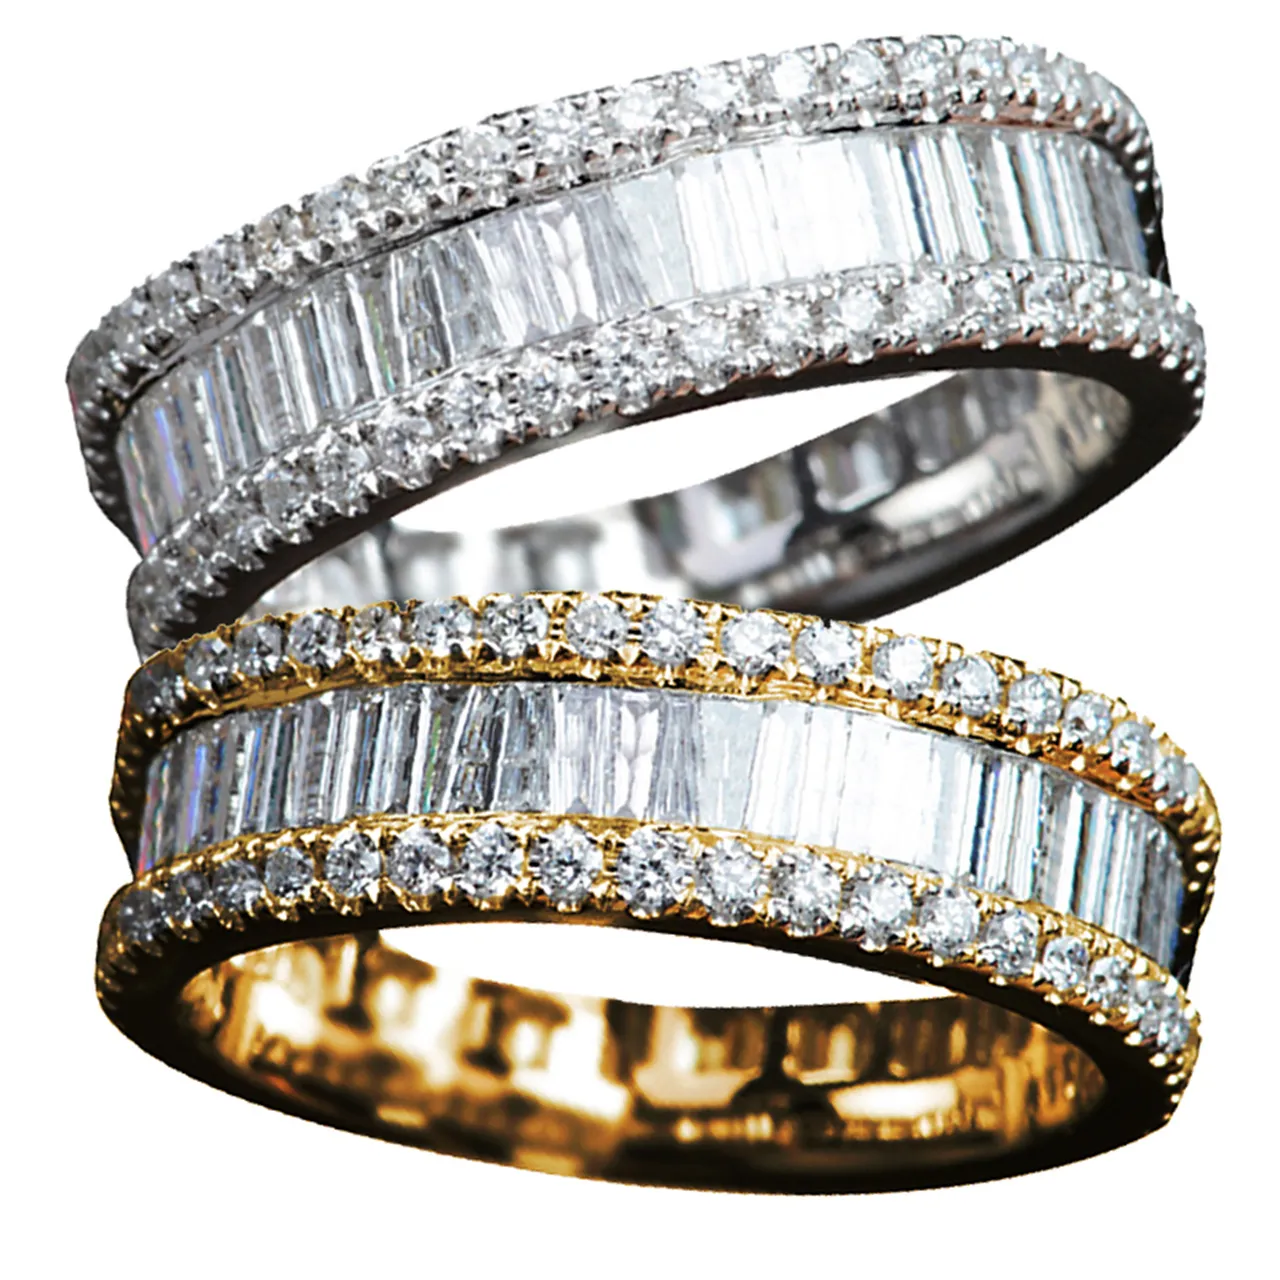 Voller Diamanten Ringe 5A Qualität Extravaganter Liebesring Gold Silber Rose Edelstahl Messing Buchstabe Diamant Ringe Frauen Männer Hochzeit Schmuck Armbänder